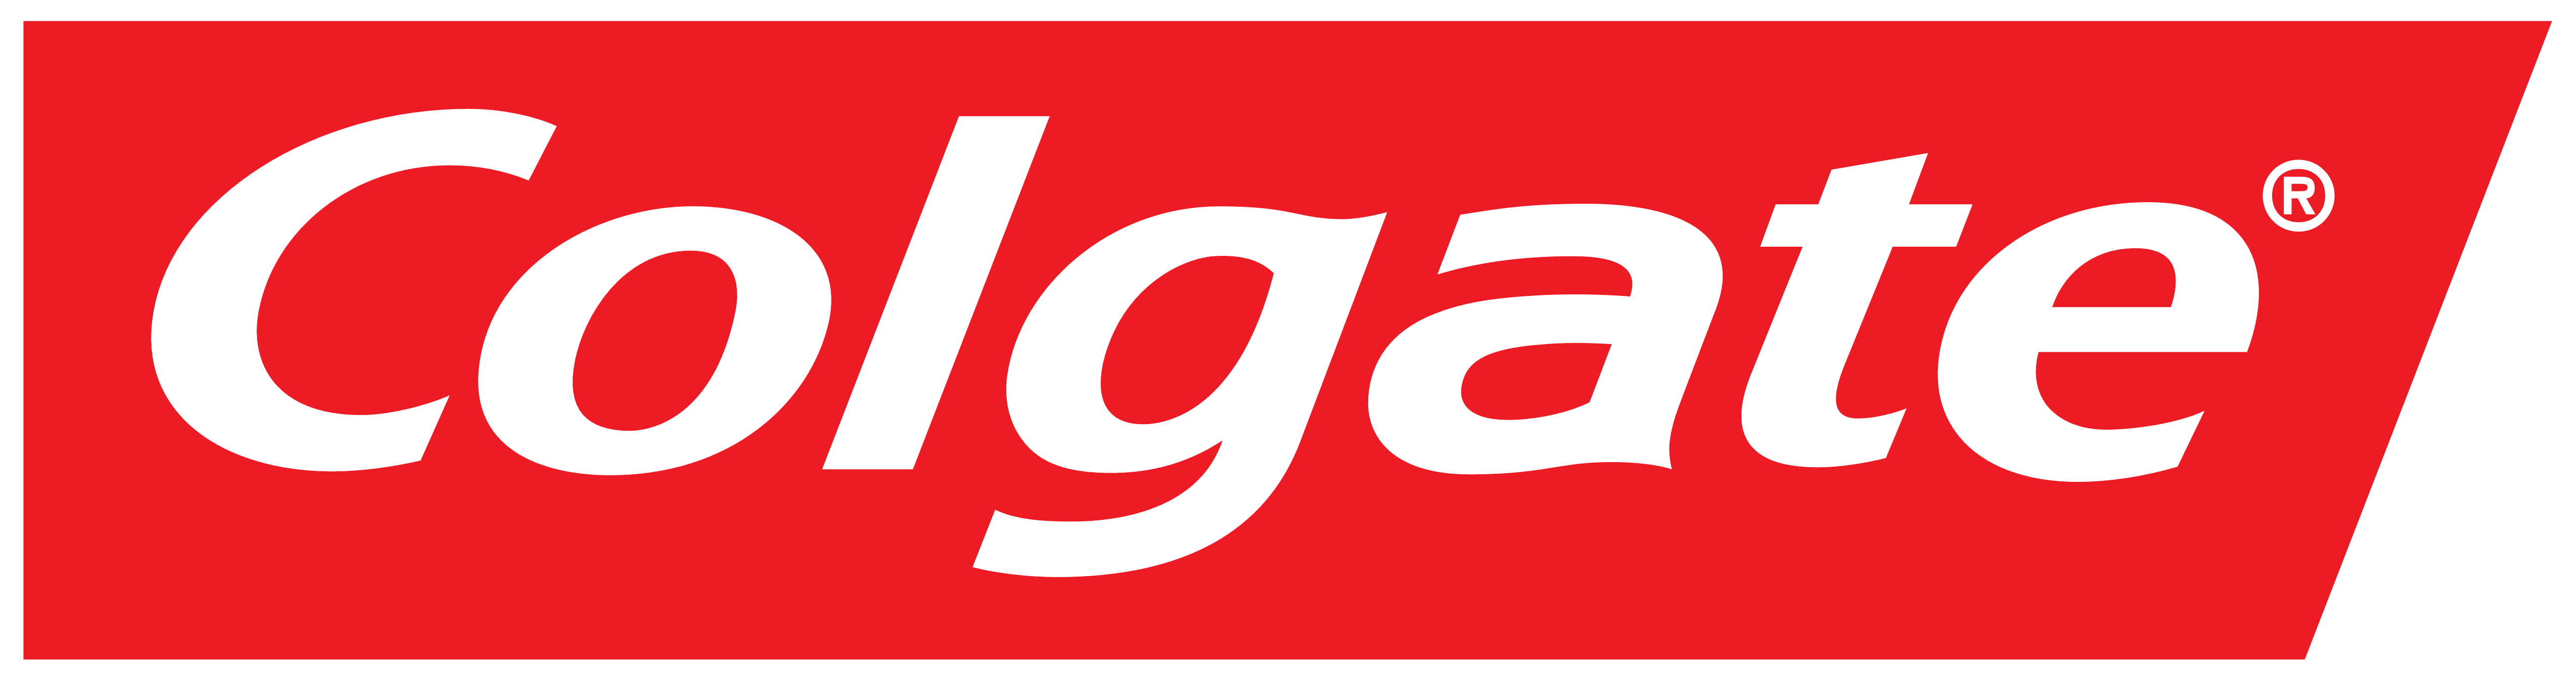 Colgate Logo PNG Image